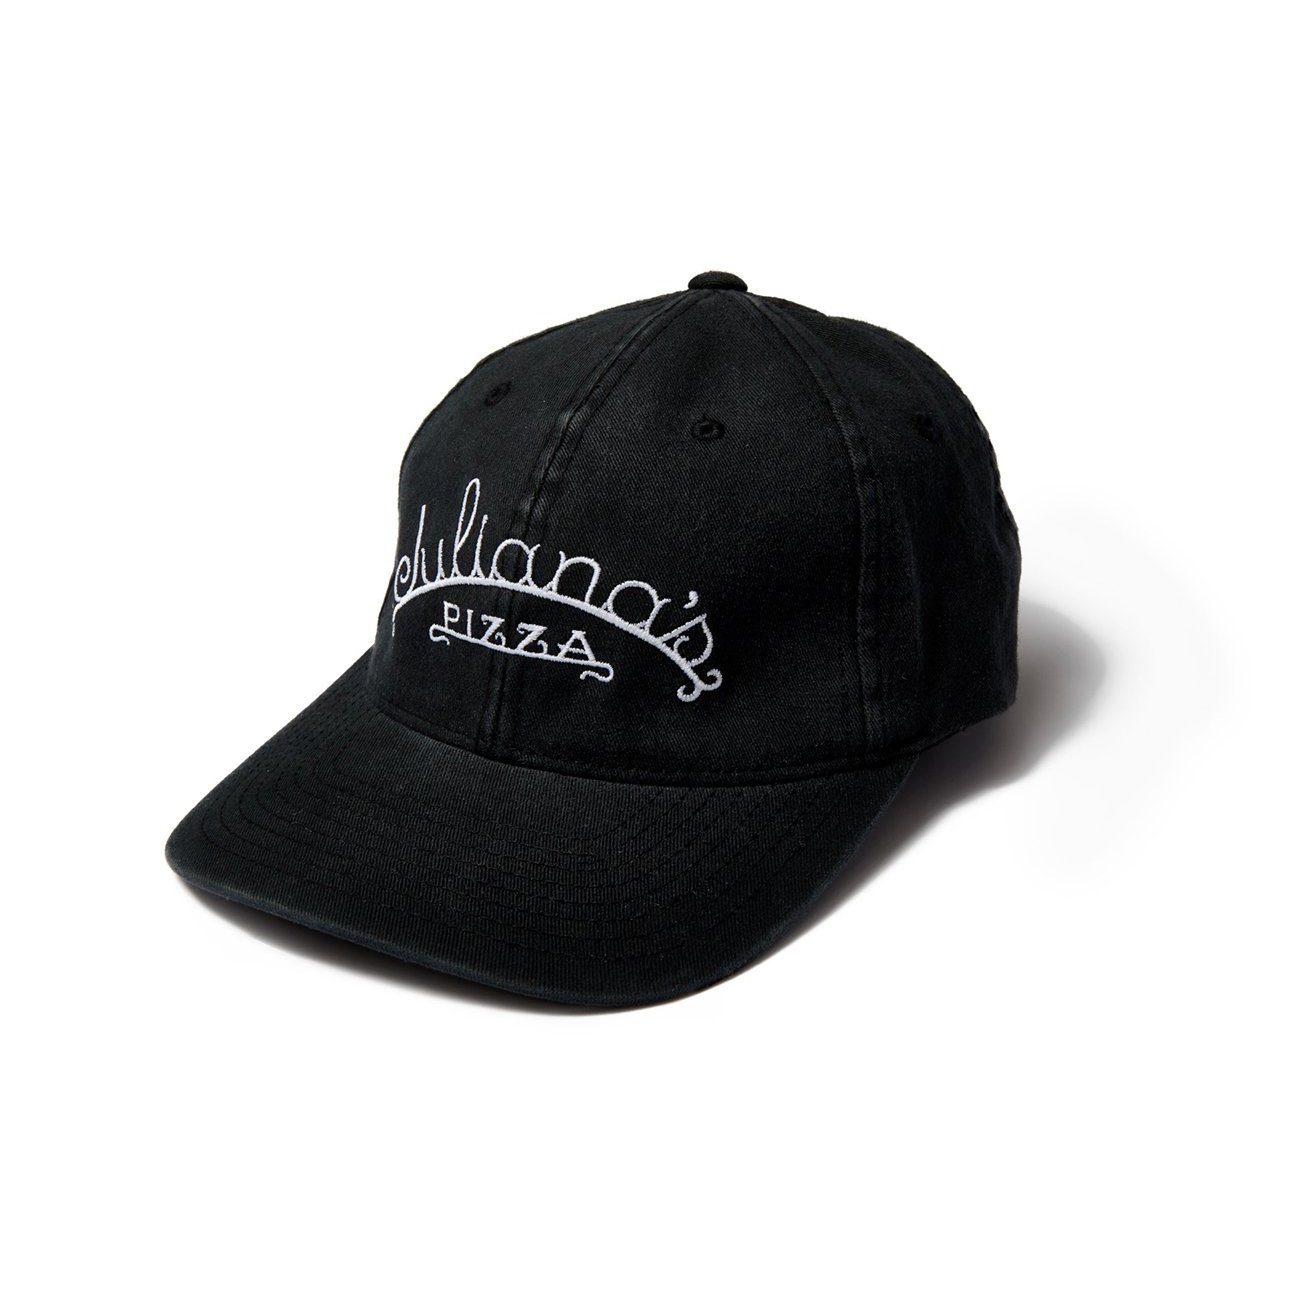 Black Cap - $18